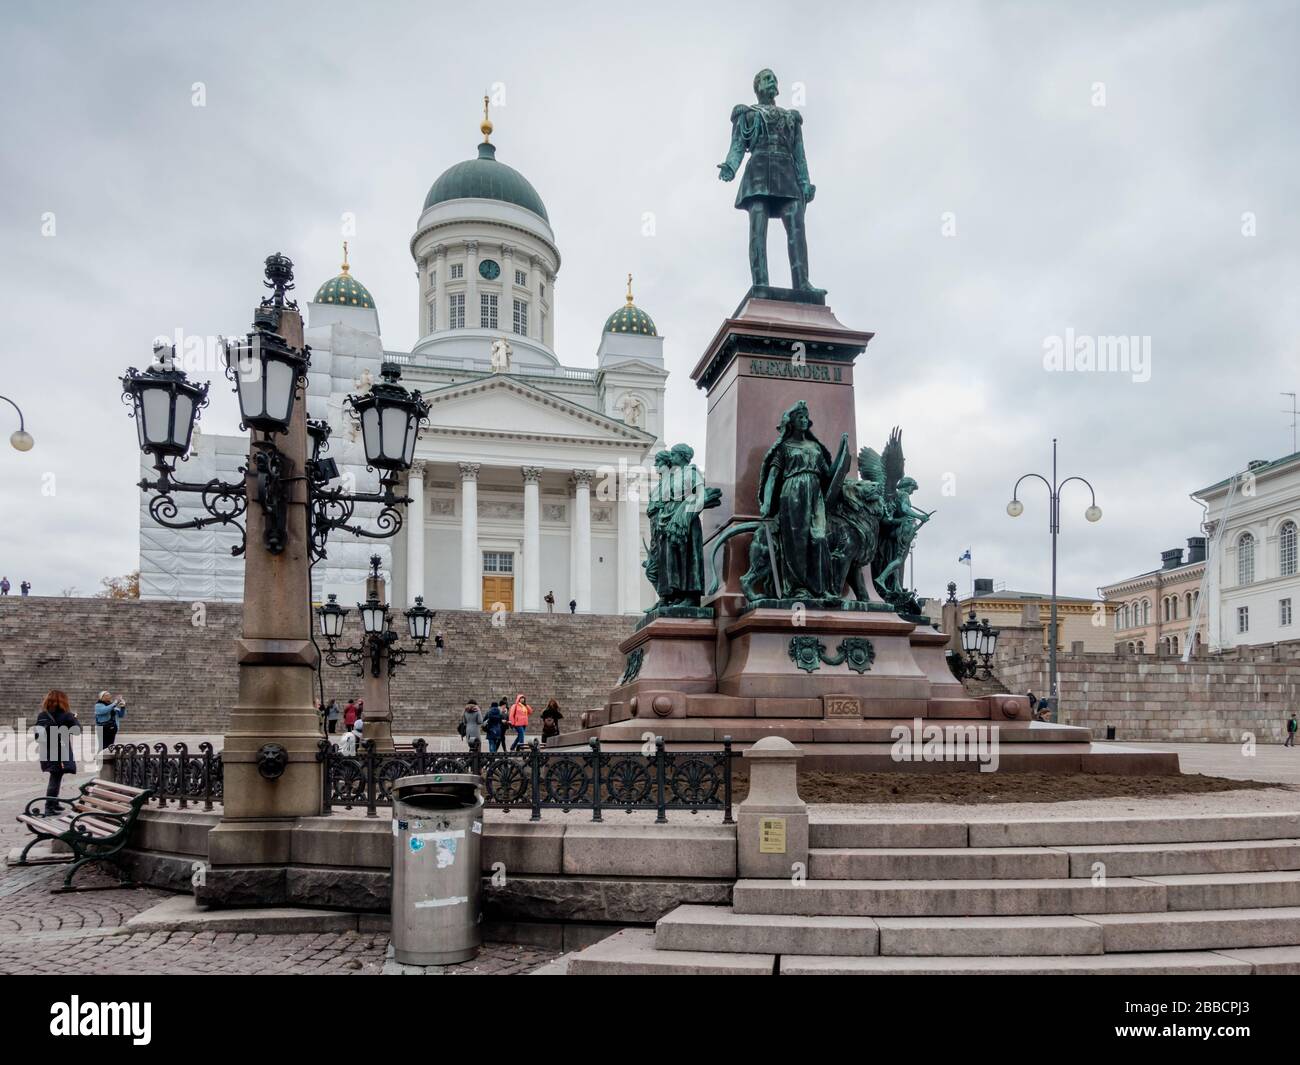 Estatua del emperador Alejandro II en la Plaza del Senado frente a la Catedral de Helsinki (Helsingin Tuomionkirkko) Finlandia Foto de stock